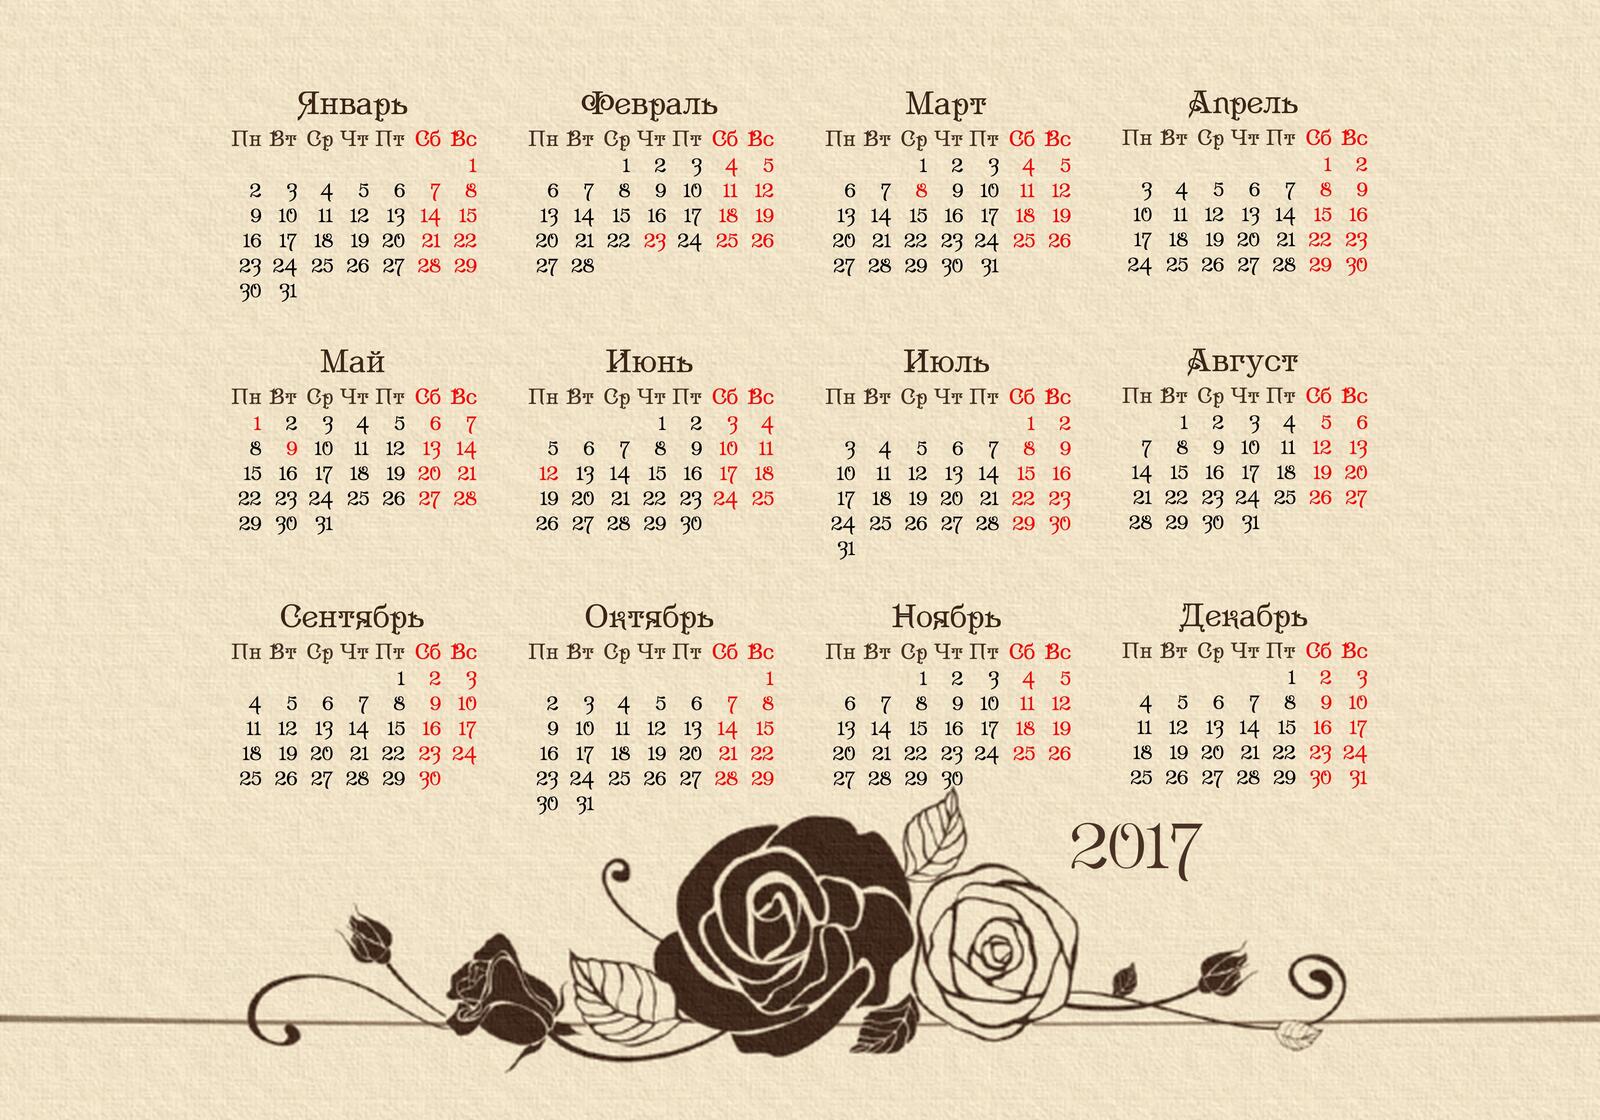 Wallpapers calendar for 2017 calendar grid for 2017 calendar for 2017 2017 on the desktop